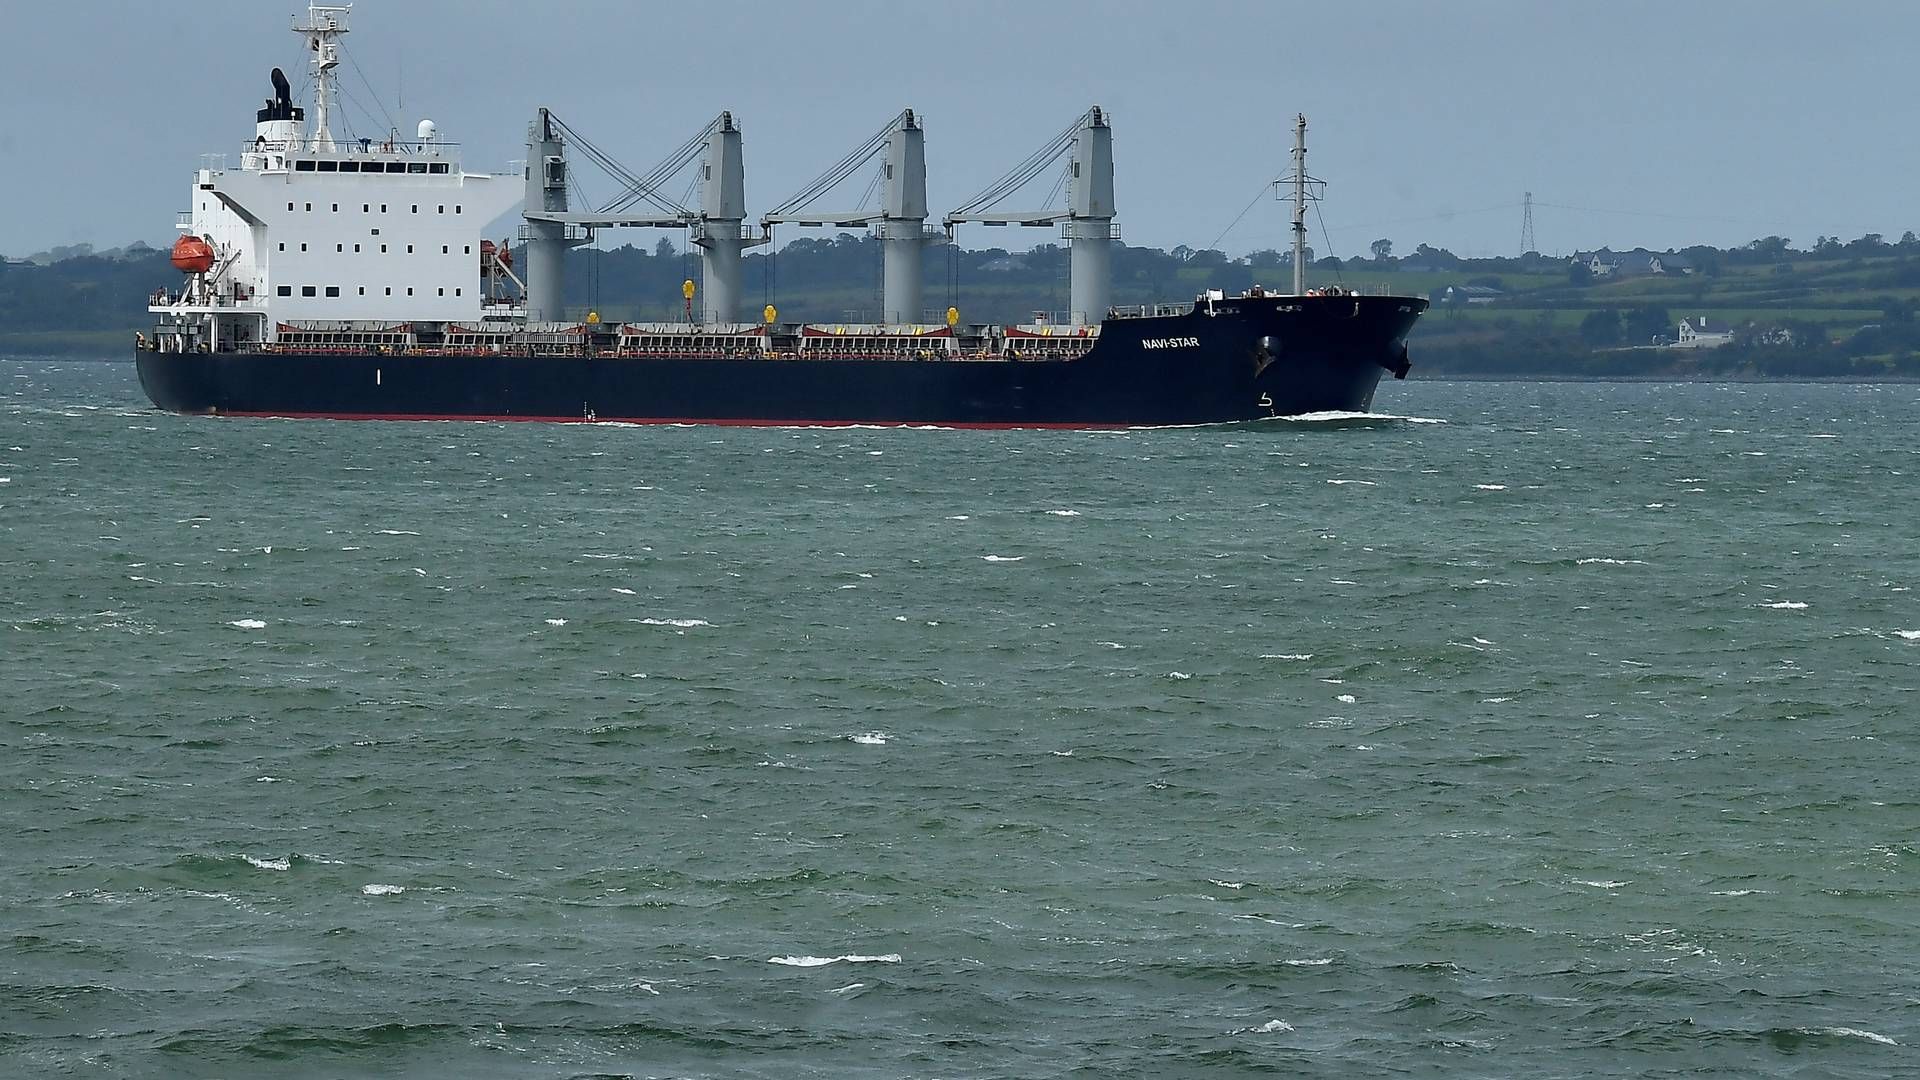 Nu er to handelsskibe sejlet i sikkerhed fra Ukraine på ny humanitær korridor. Skibet på billedet er ikke relateret. | Foto: Clodagh Kilcoyne/Reuters/Ritzau Scanpix